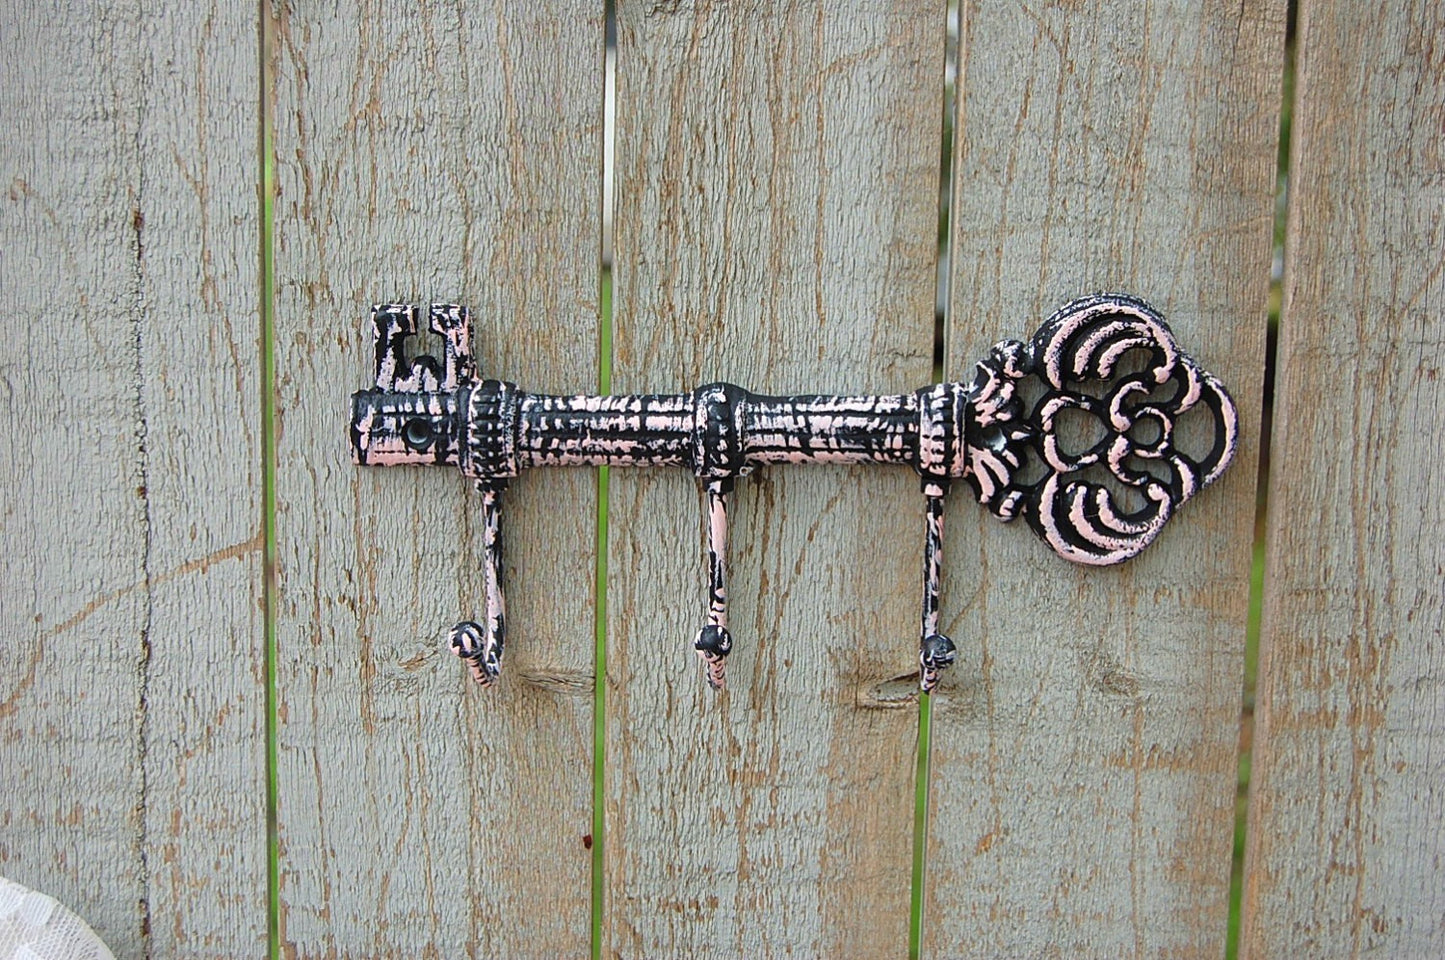 Pink & black cast iron key holder - The Vintage Artistry